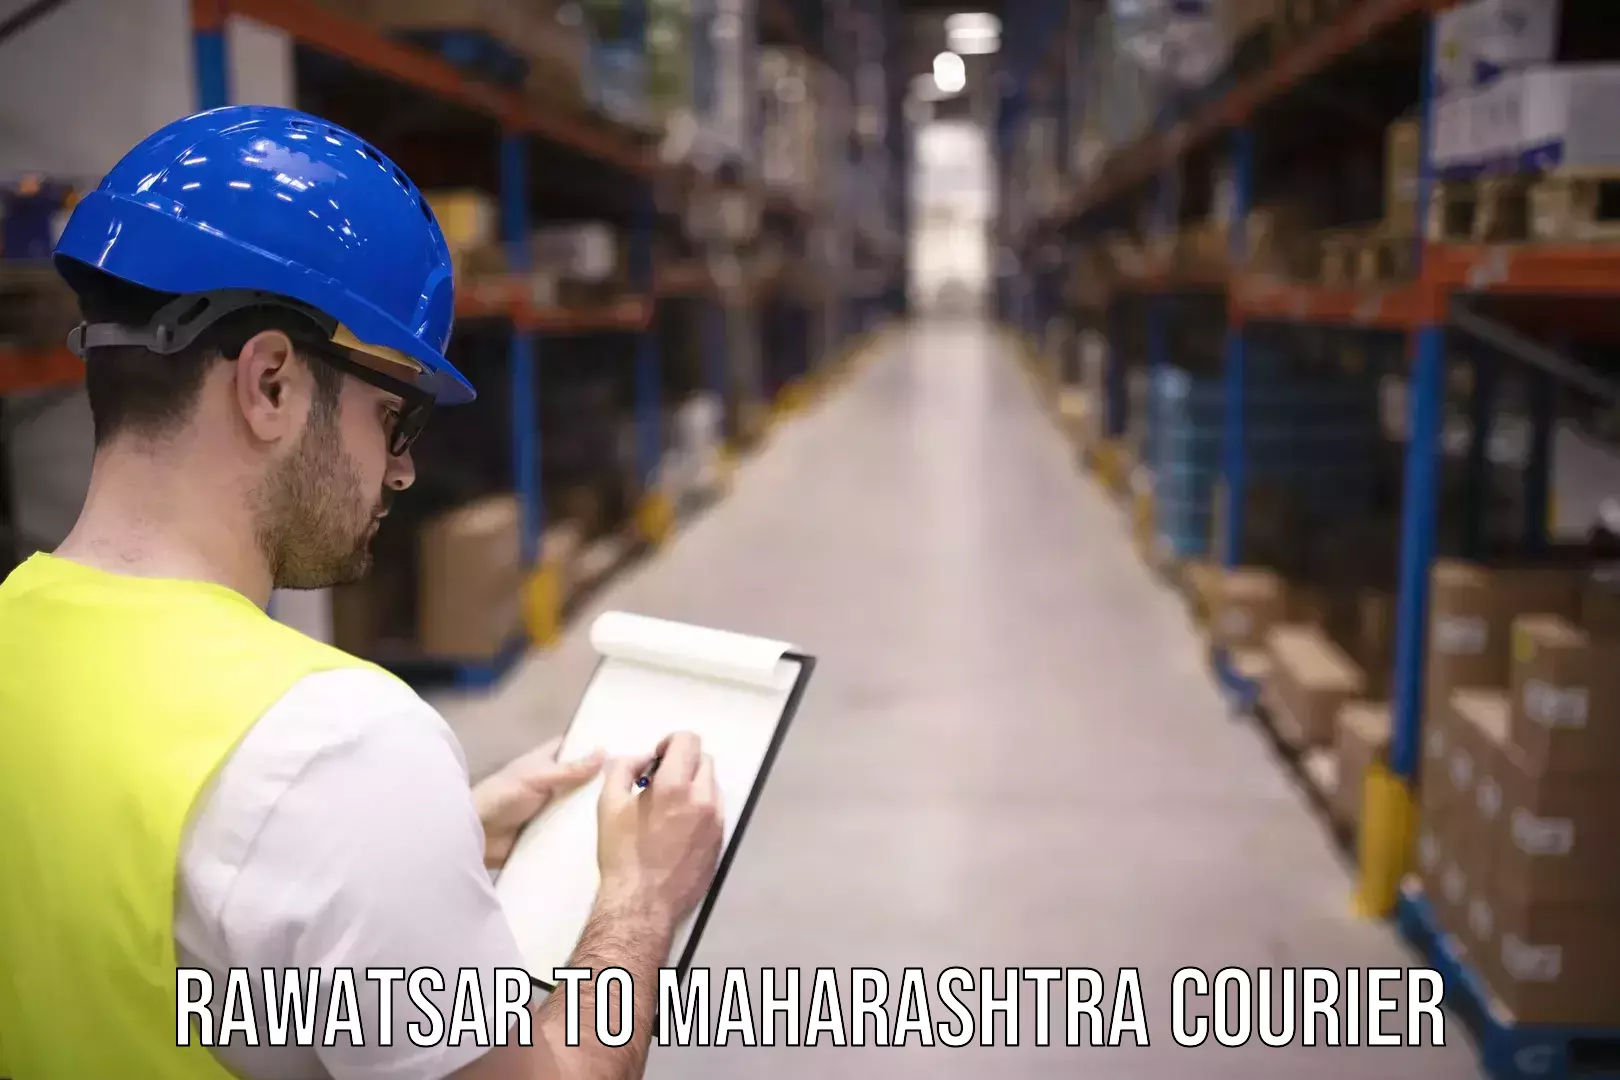 Urban courier service Rawatsar to Maharashtra